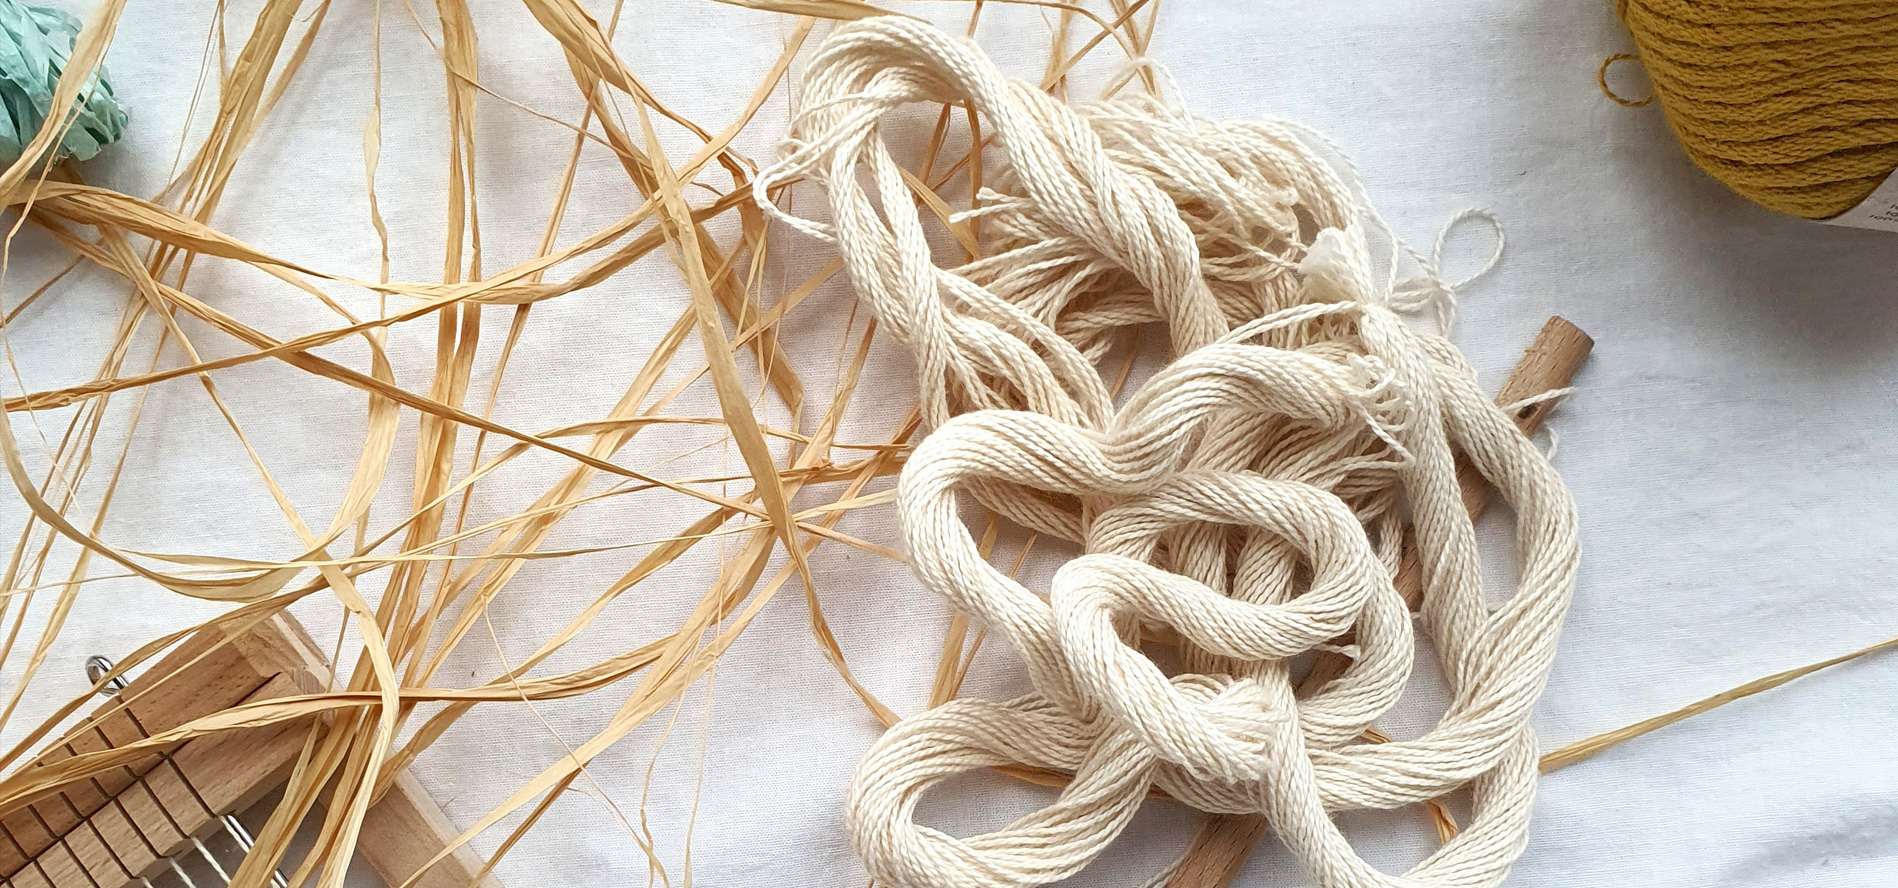 Loom and a jumble of yarn